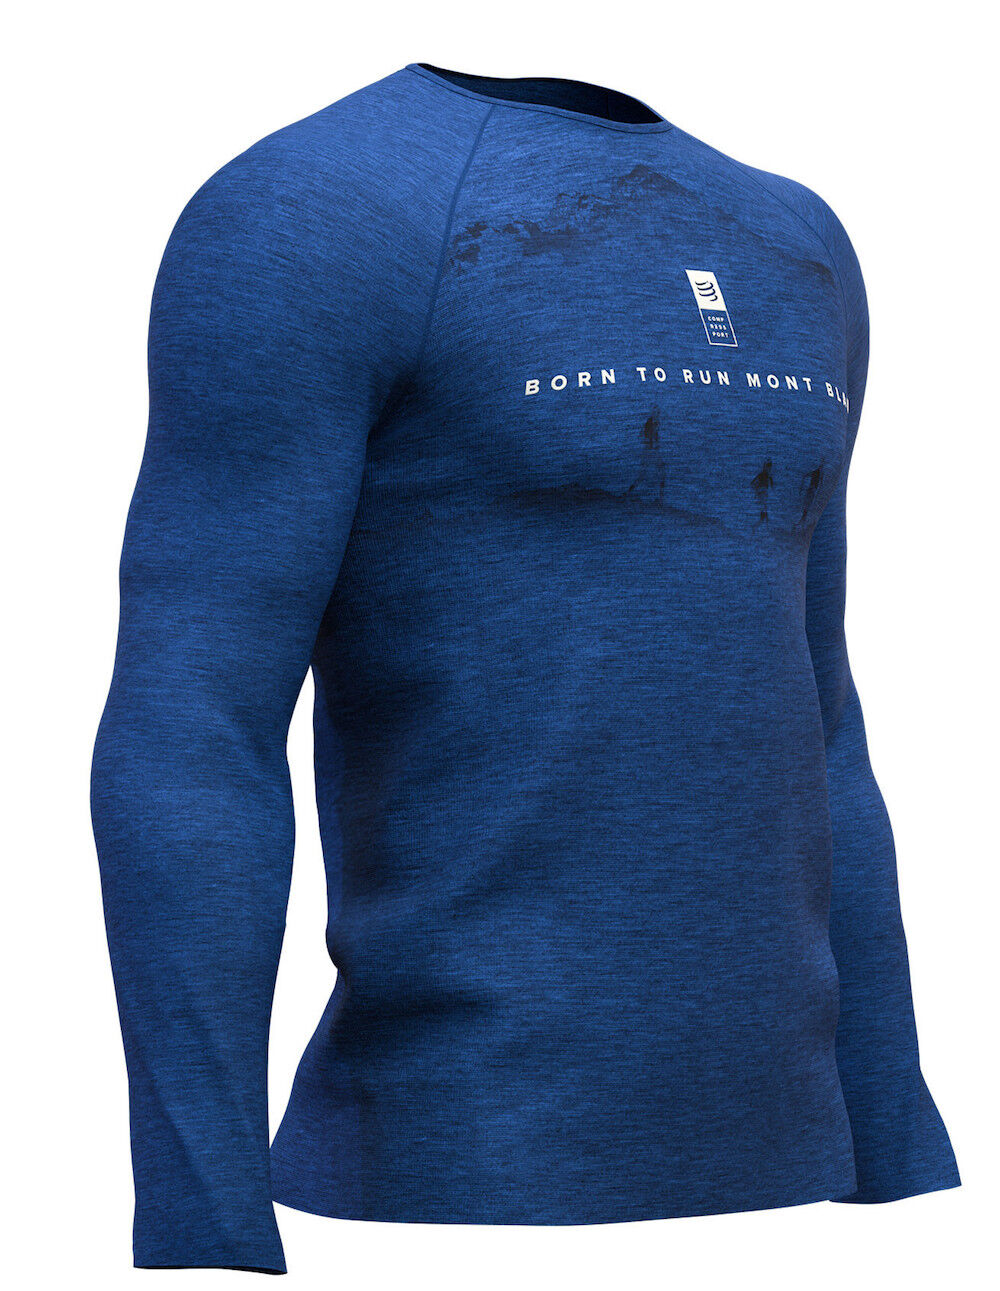 Compressport - Training Tshirt LS - Mont Blanc 2019 - Camiseta técnica - Hombre